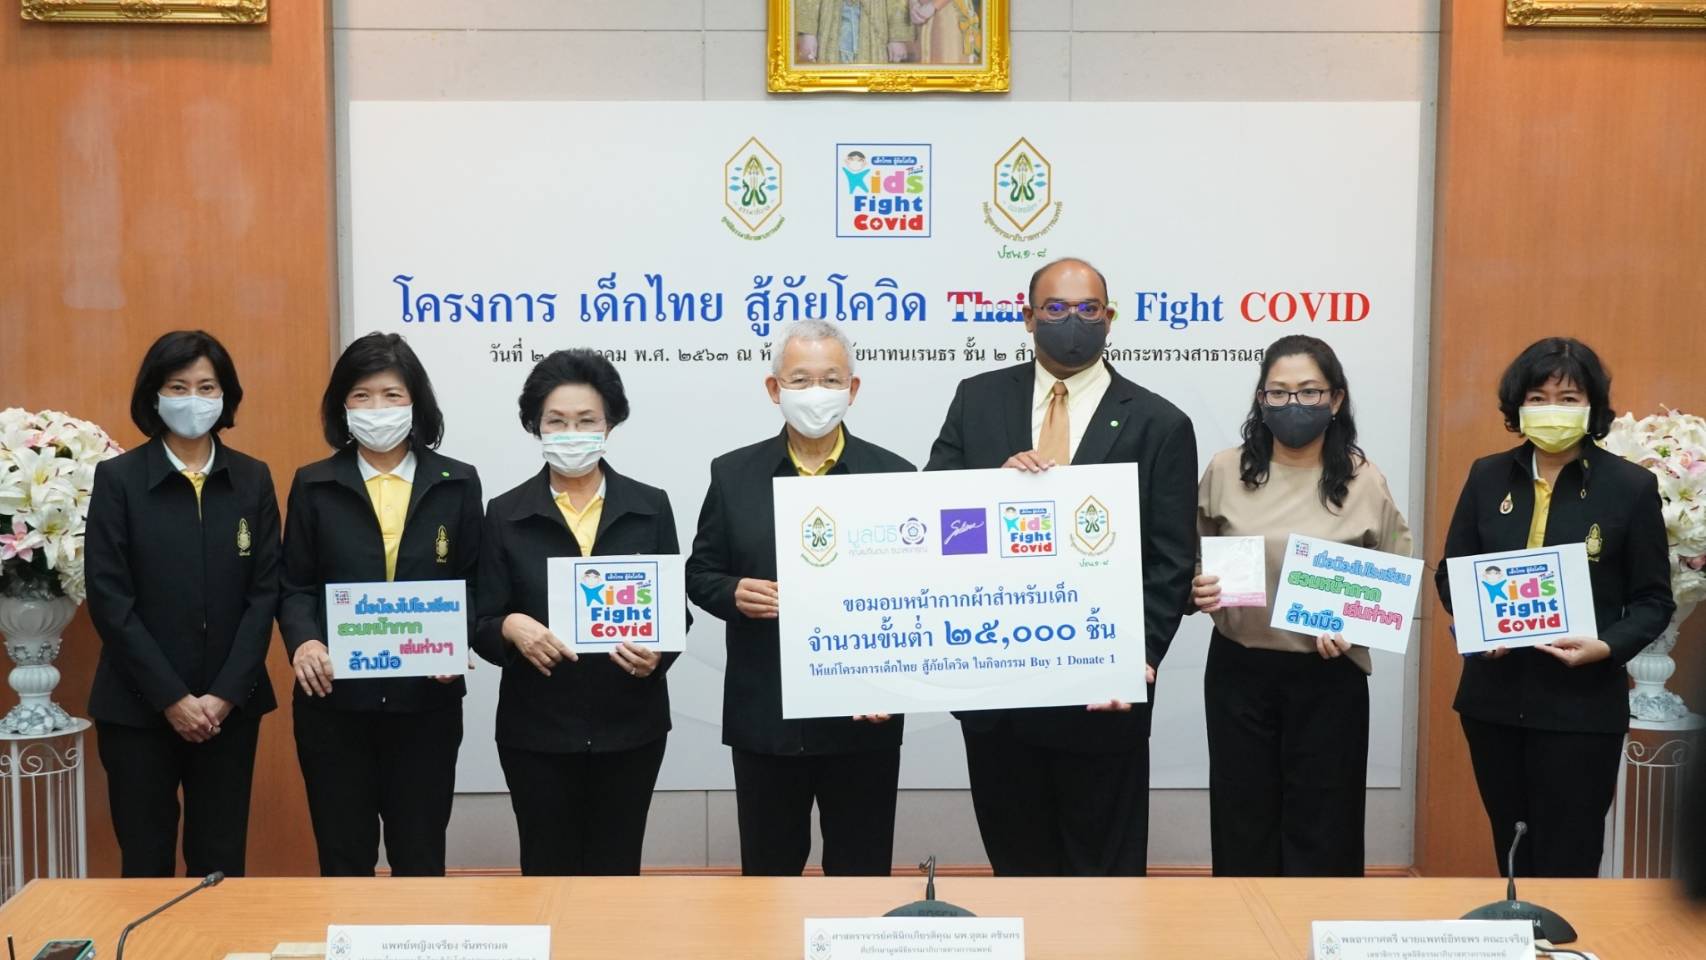 ซาบีน่าร่วมโครงการเด็กไทยสู้ภัยโควิด Thai Kids Fight COVID (TKFC) “จัดหาหน้ากากผ้าเพื่อน้องประถม”มอบให้แก่โรงเรียนต่างๆที่ขาดแคลน โดยเฉพาะในถิ่นทุรกันดาร